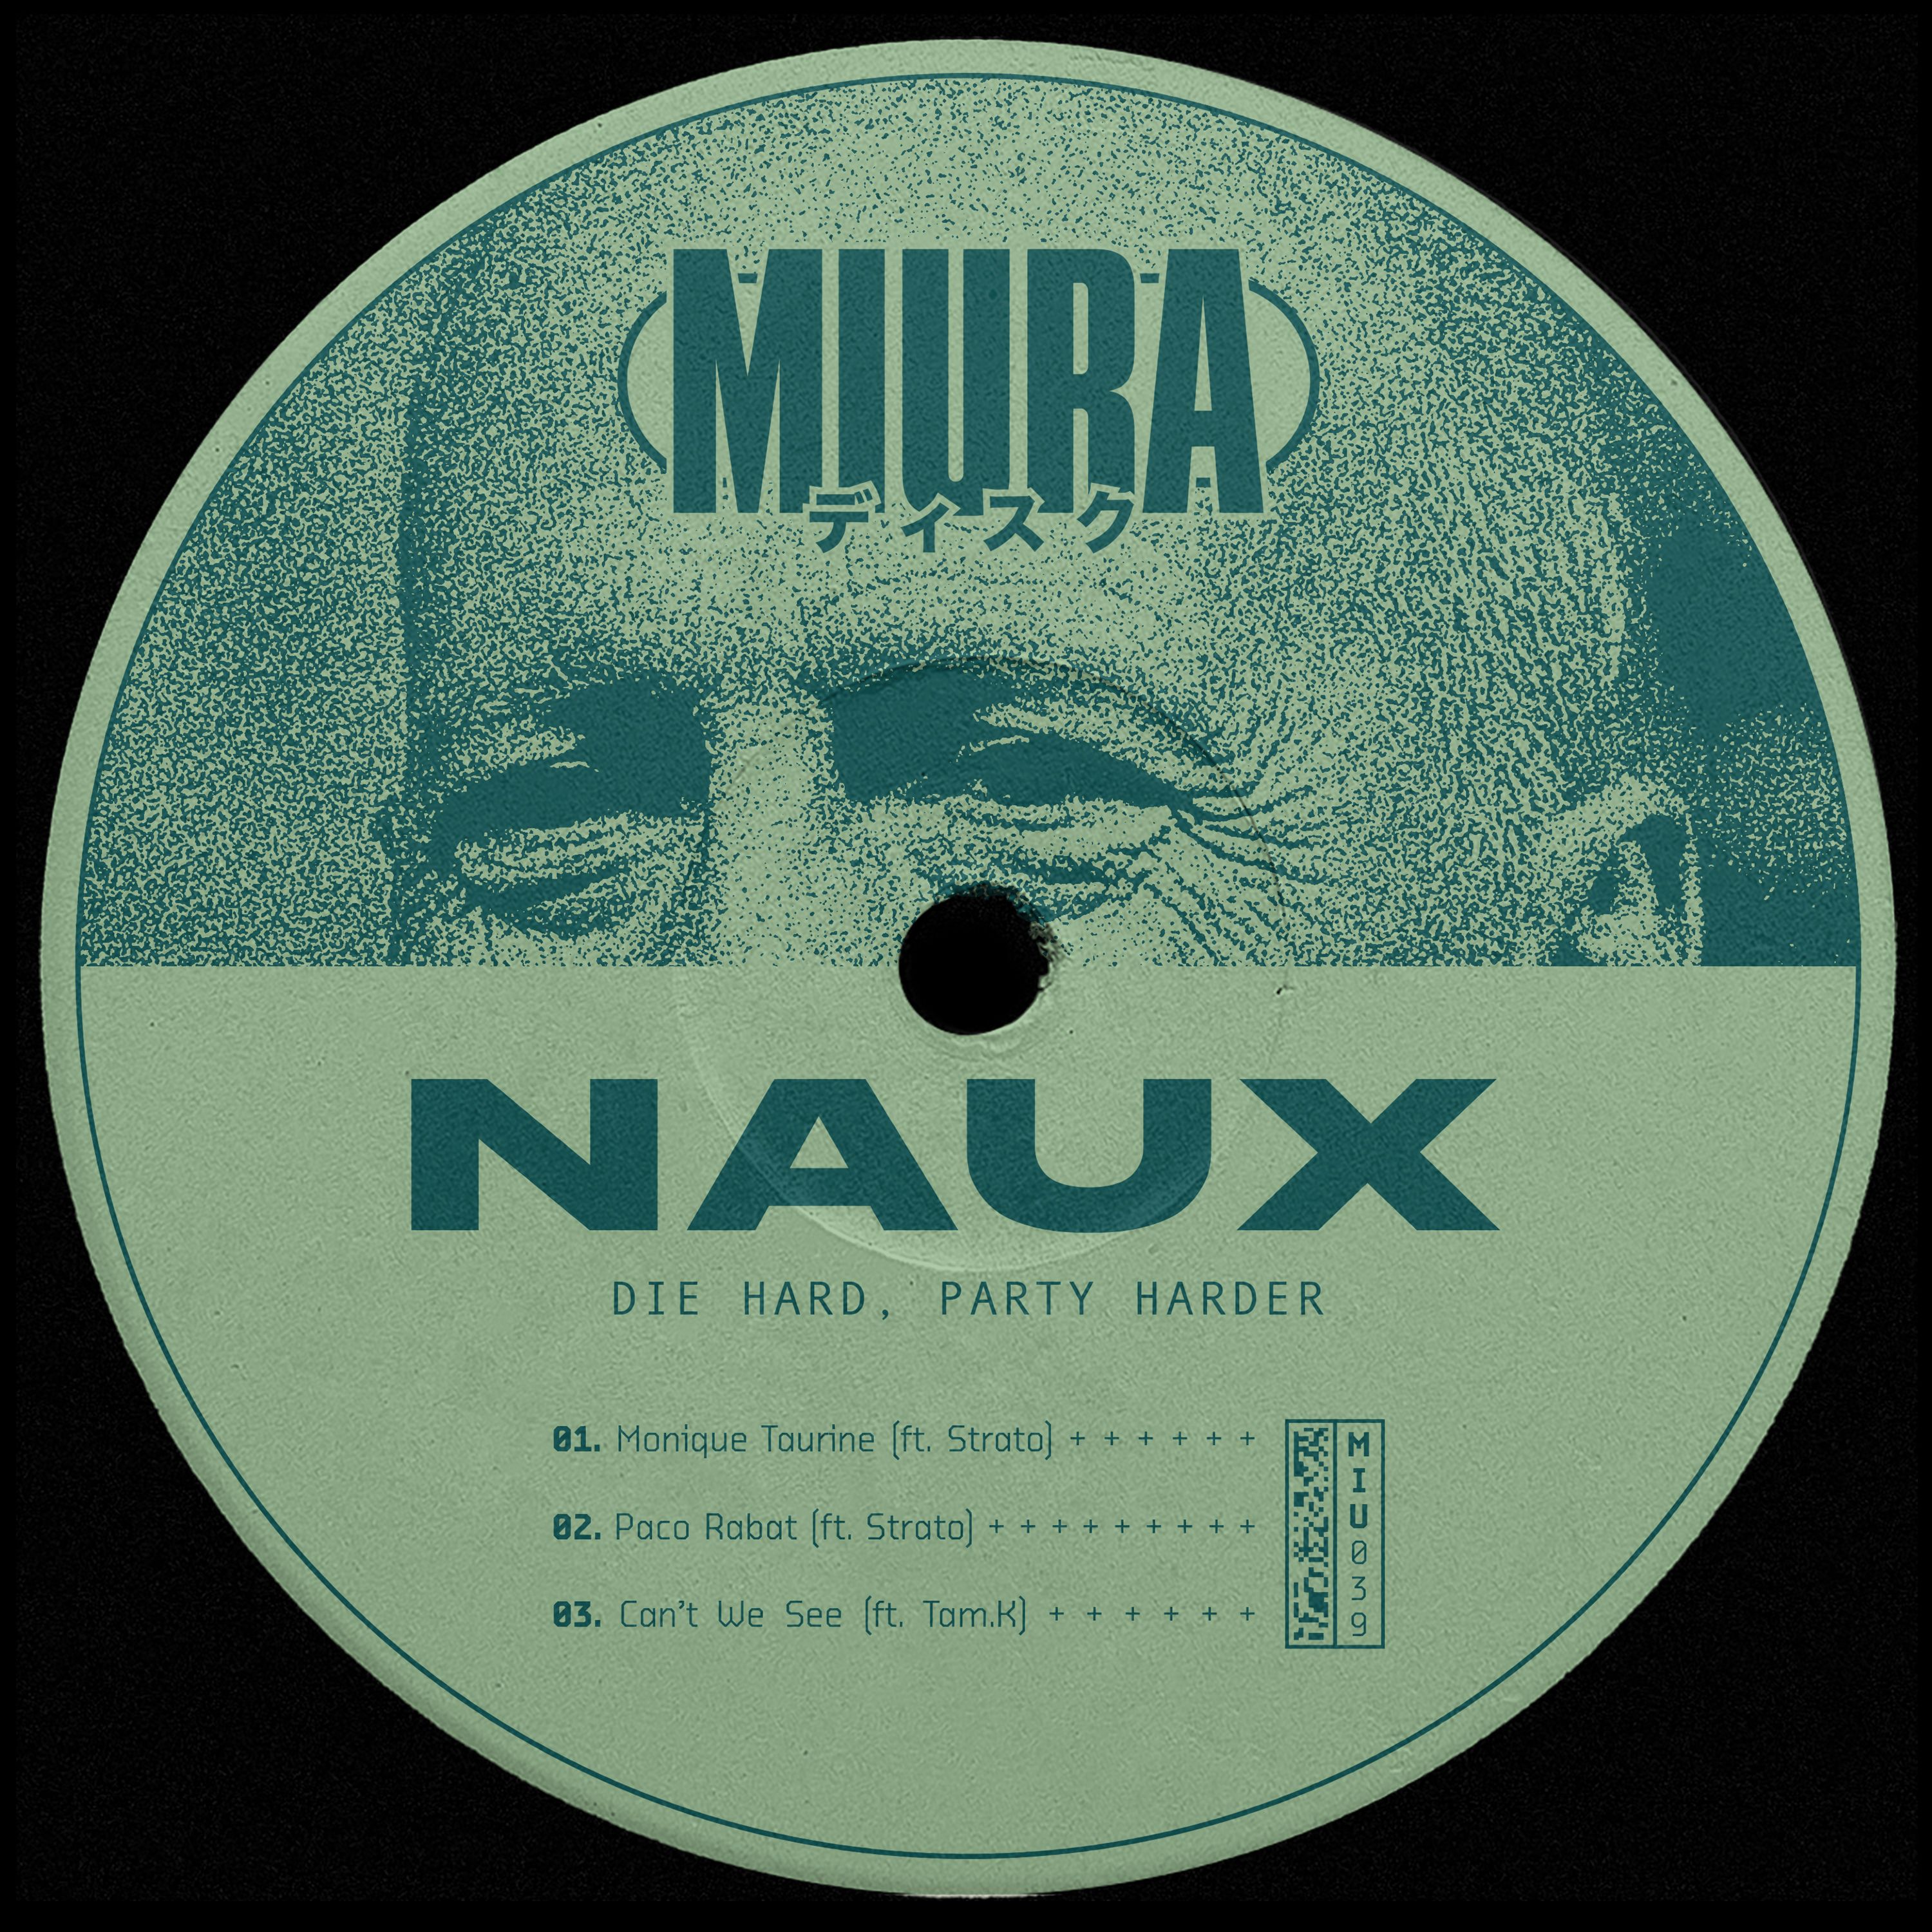 Parsisiųsti PREMIERE: Naux & Strato - Monique Taurine [Miura Records]